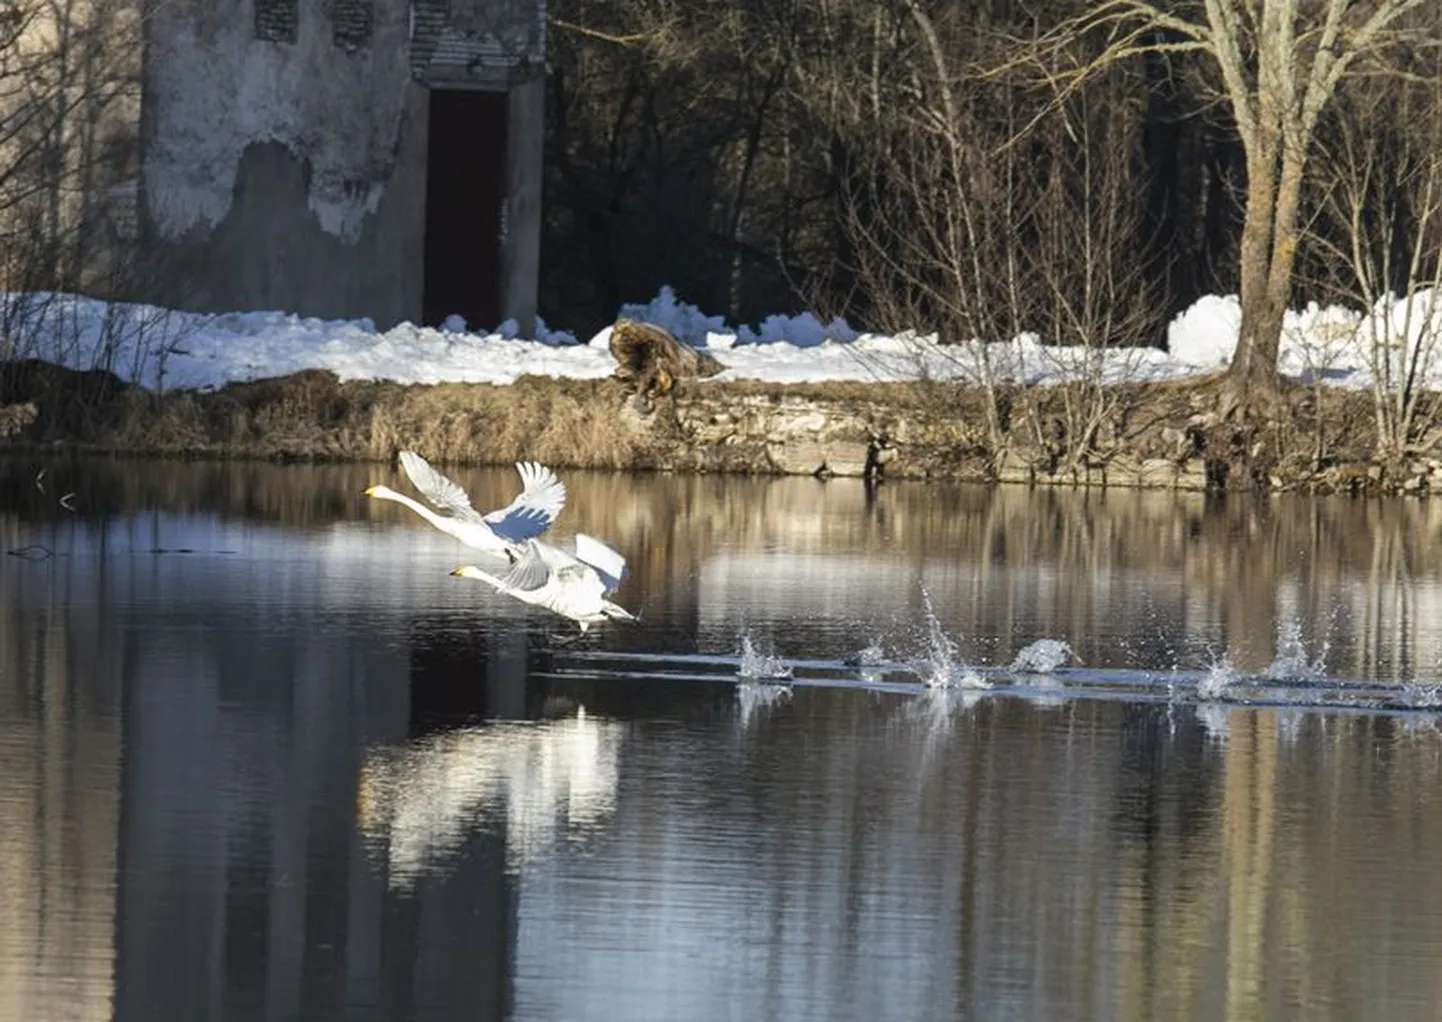 Eestisse talvituma jäänud luiged pole enam ka sisemaal harulduseks, kuid  tegemist on siiski rohkem viimase aastakümne nähtusega. Need kunagised ülikute linnud on nüüd meilgi rohkem jälgitavad, näiteks Äntus või Vohnjas, kus ka see foto klõpsatud on.